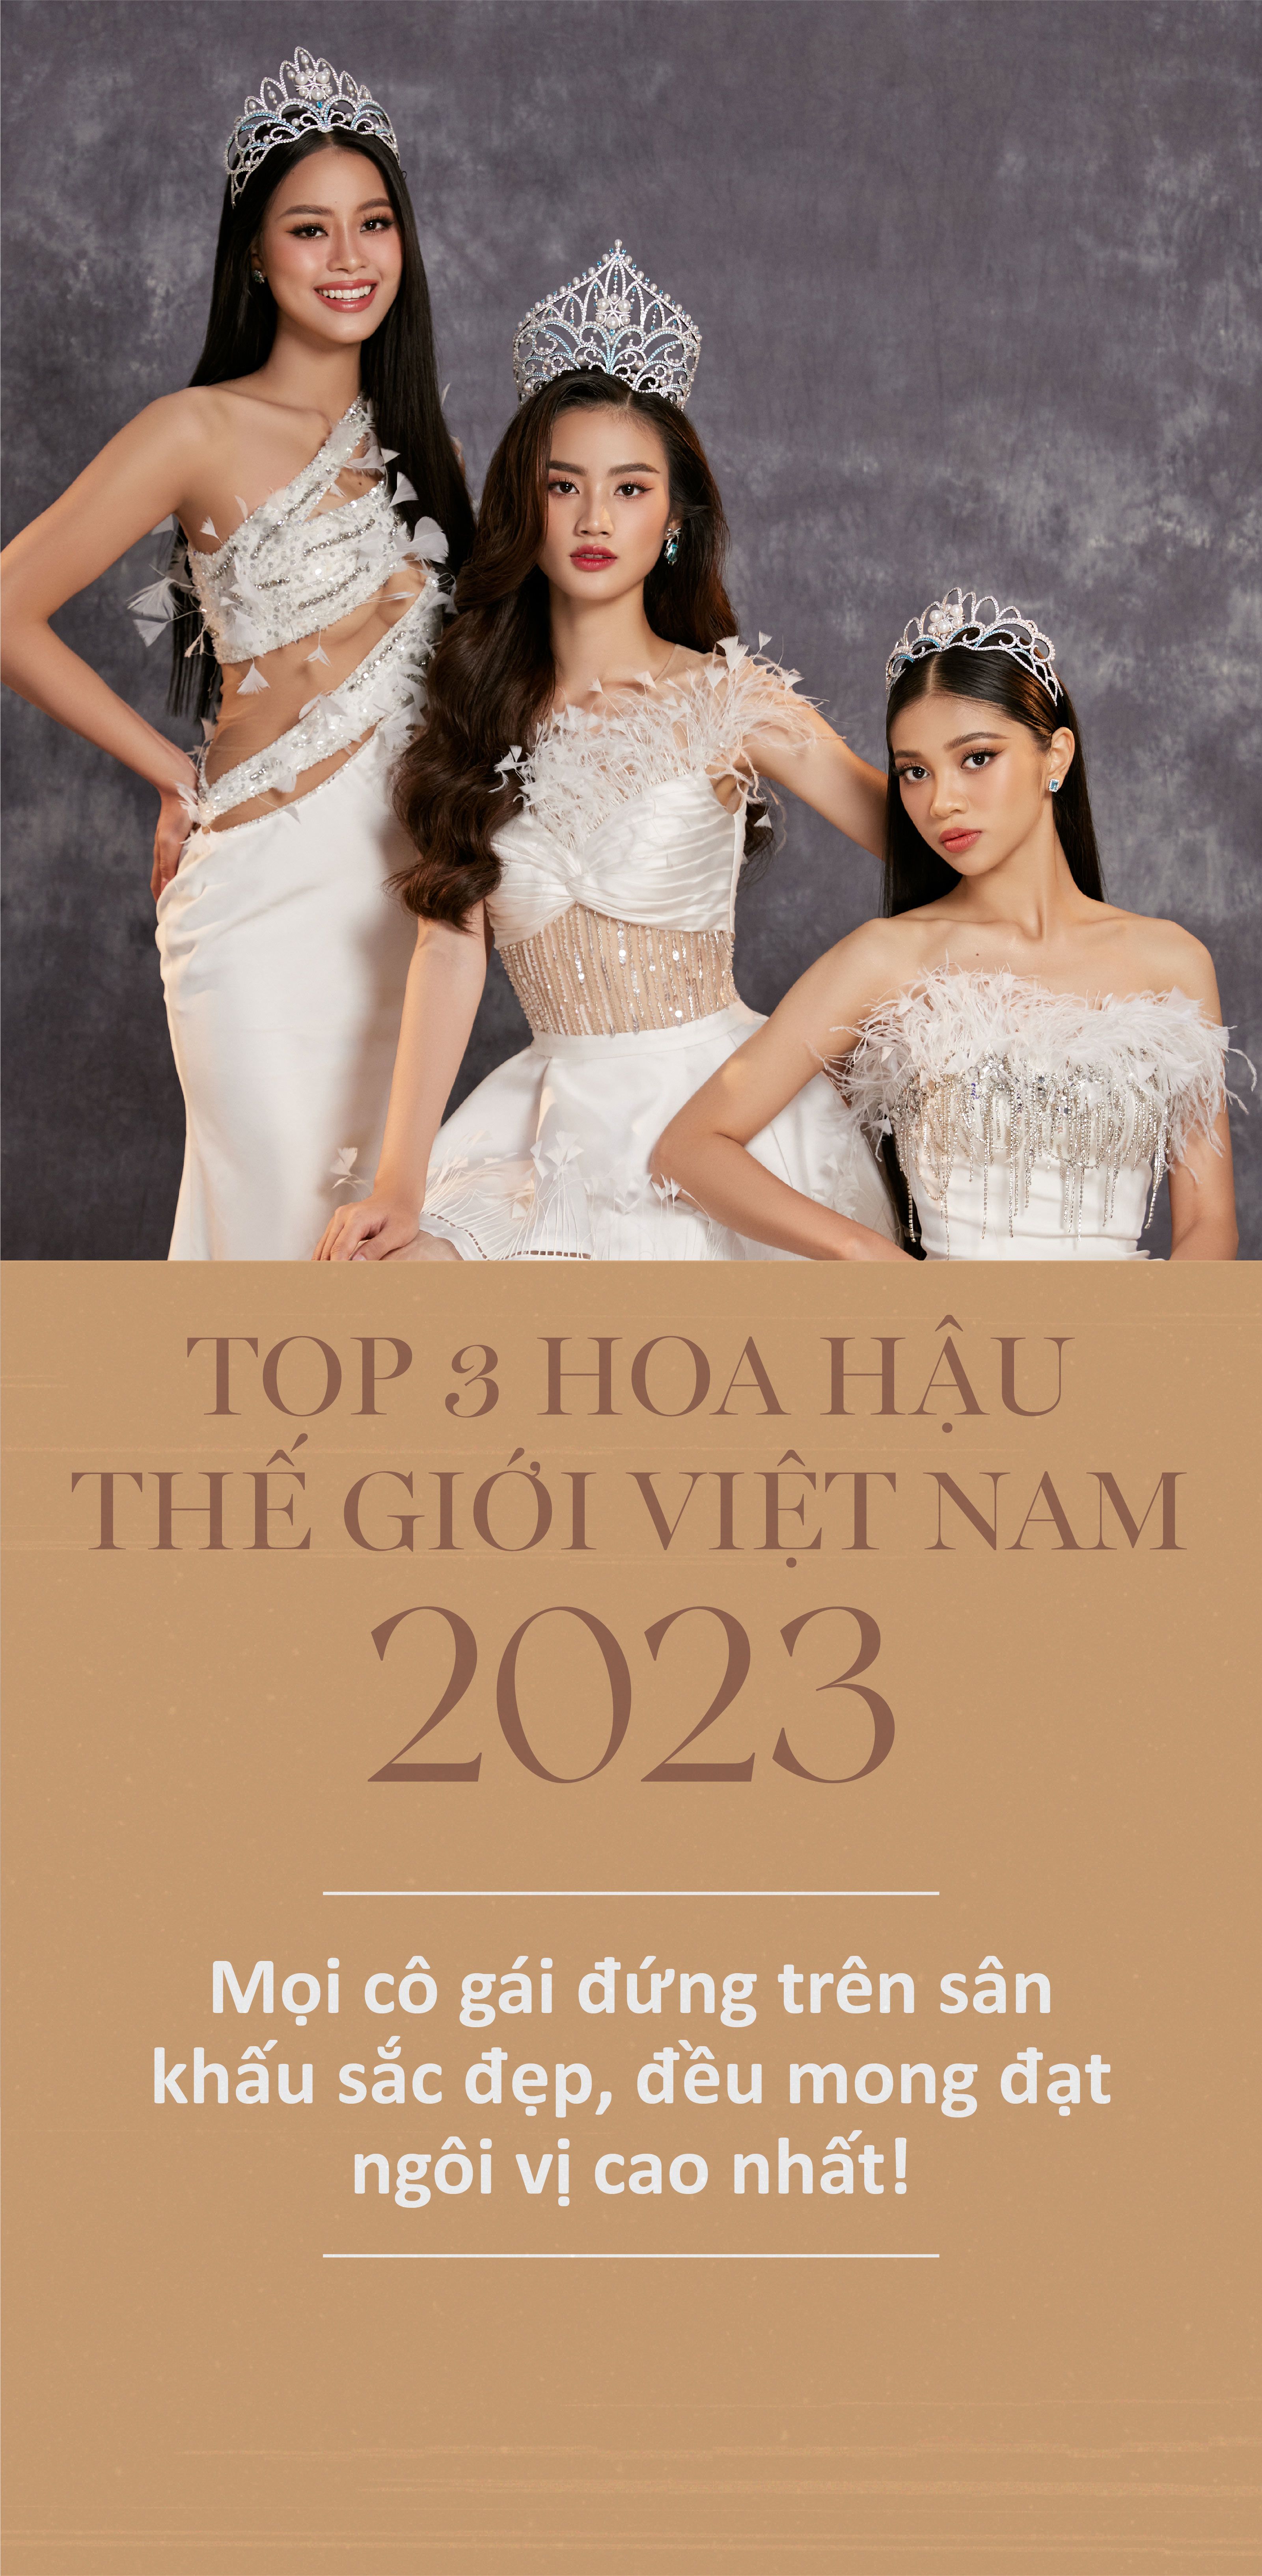 Top 3 Miss World Vietnam 2023: Mọi cô gái đứng trên sân khấu sắc đẹp, đều mong đạt ngôi vị cao nhất! - 1